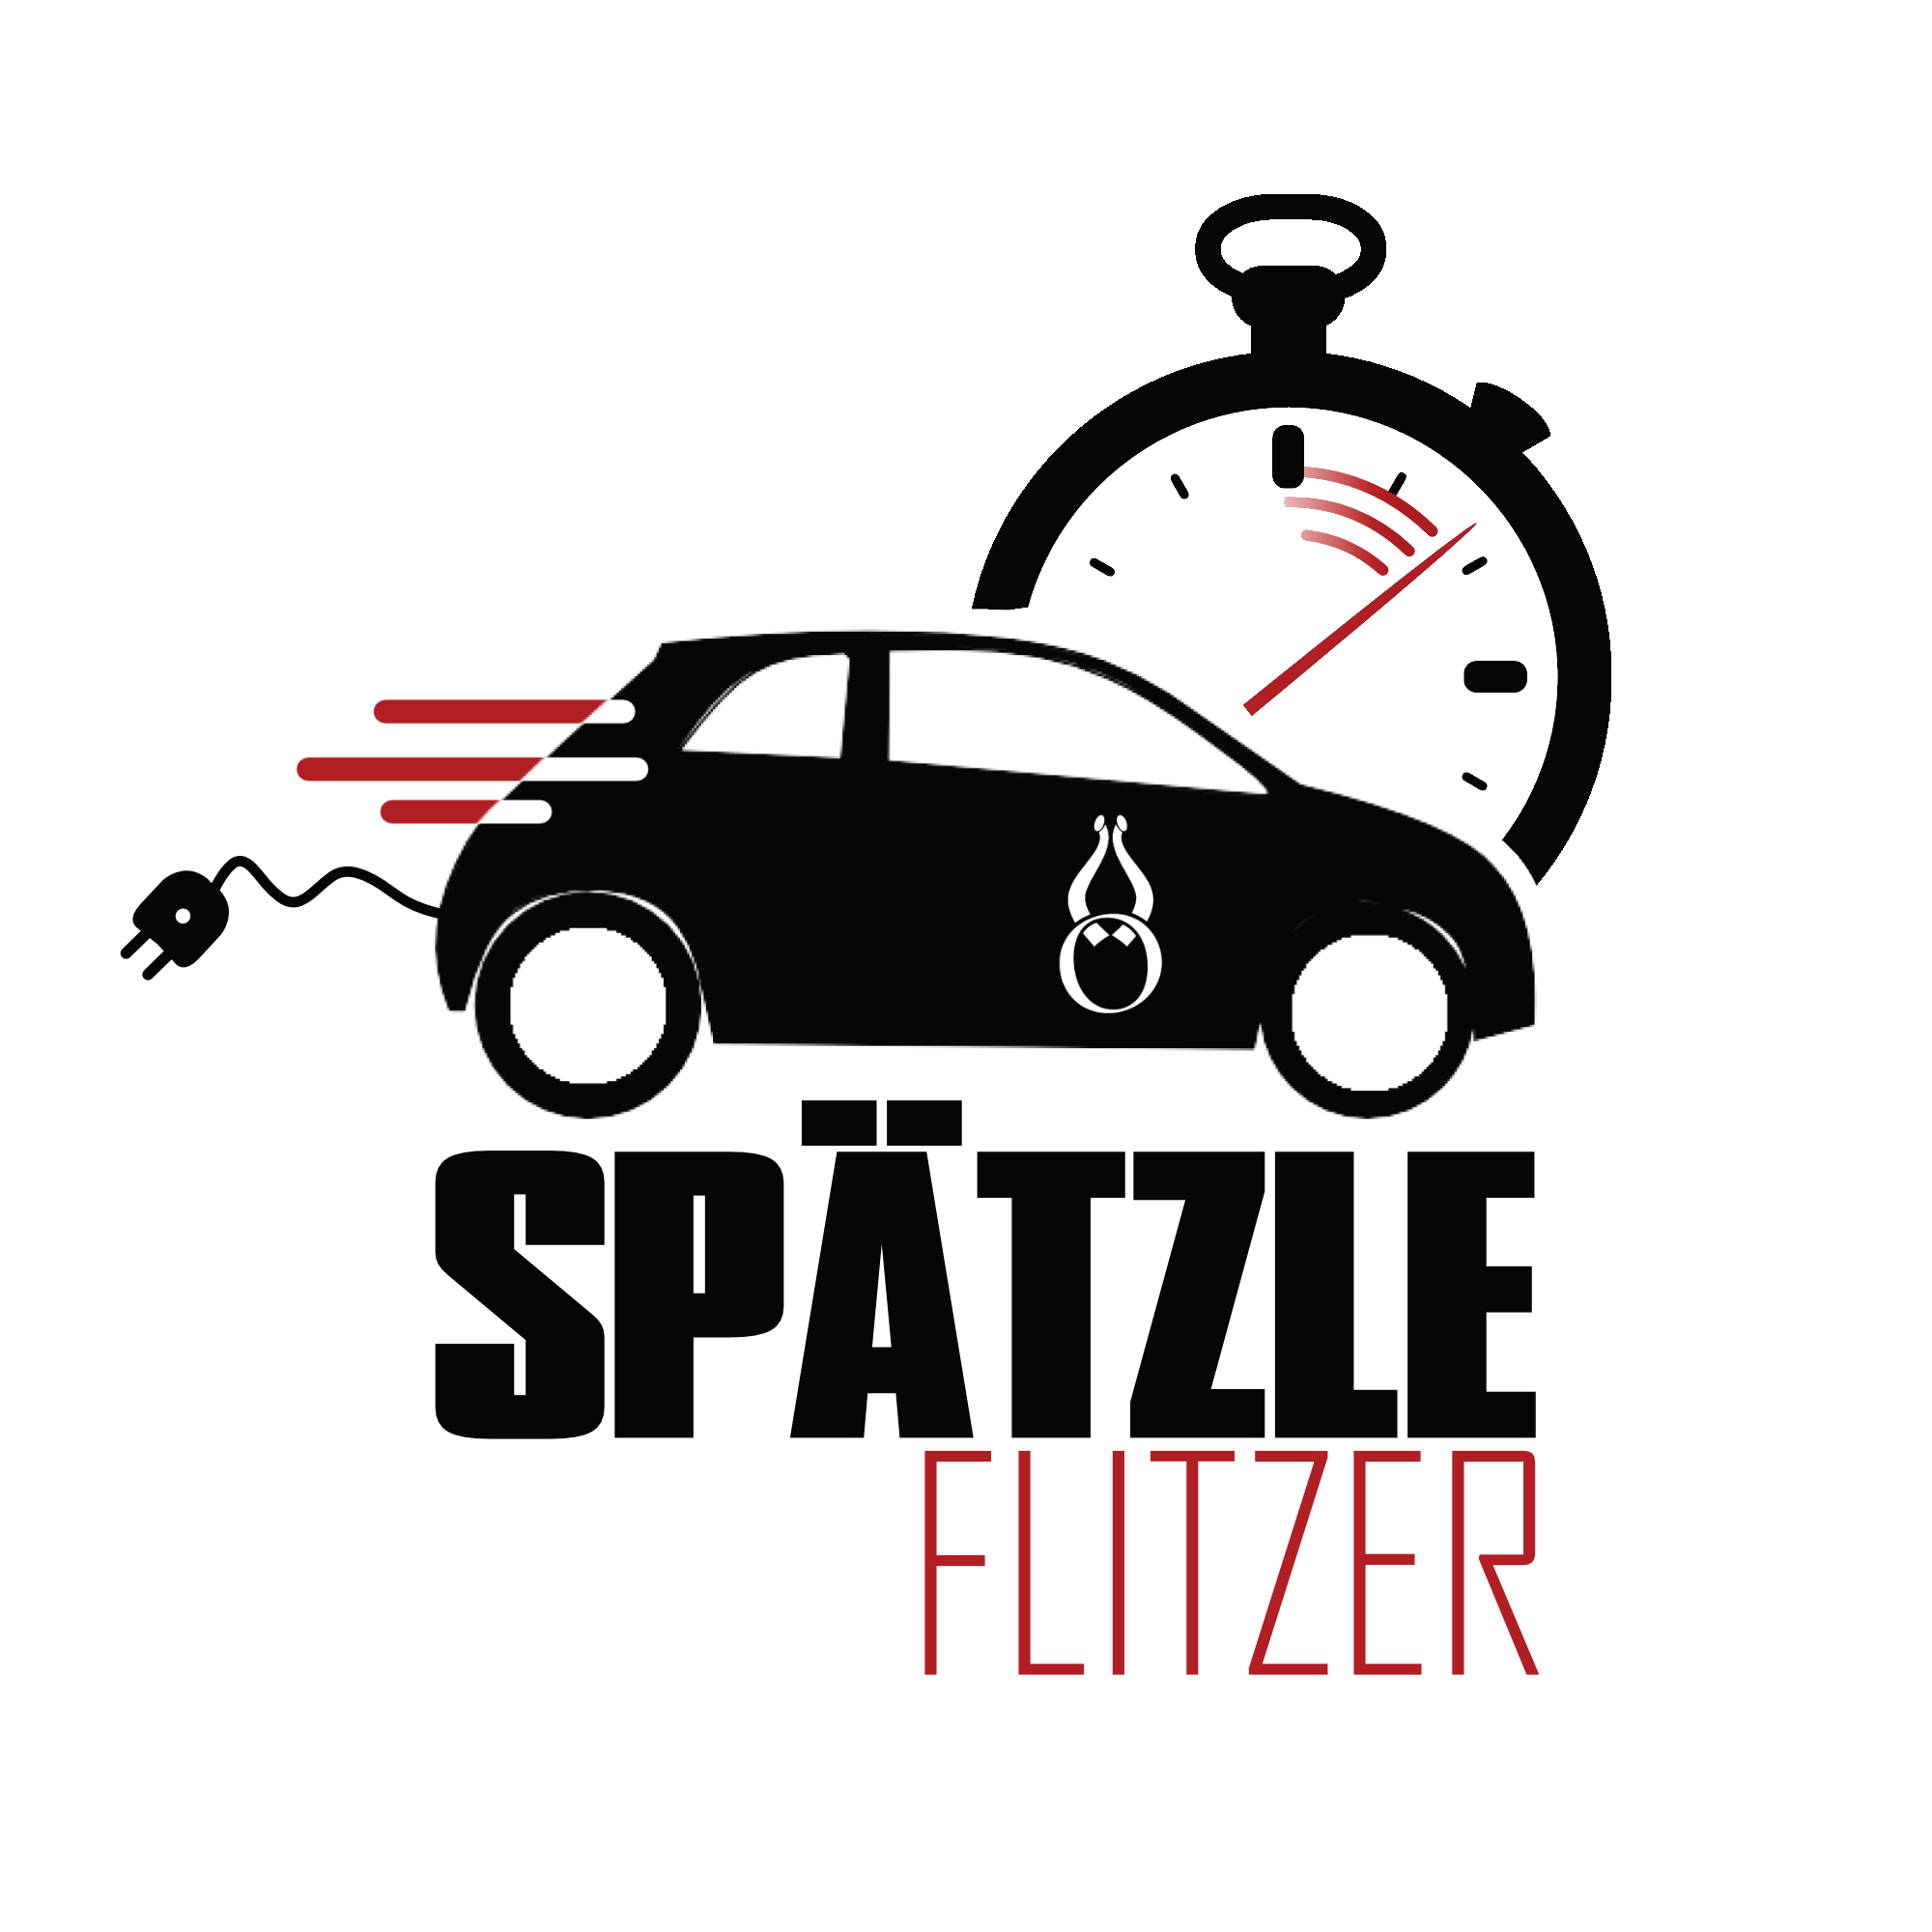 Spätzle Flitzer – by Hörners Landgasthof